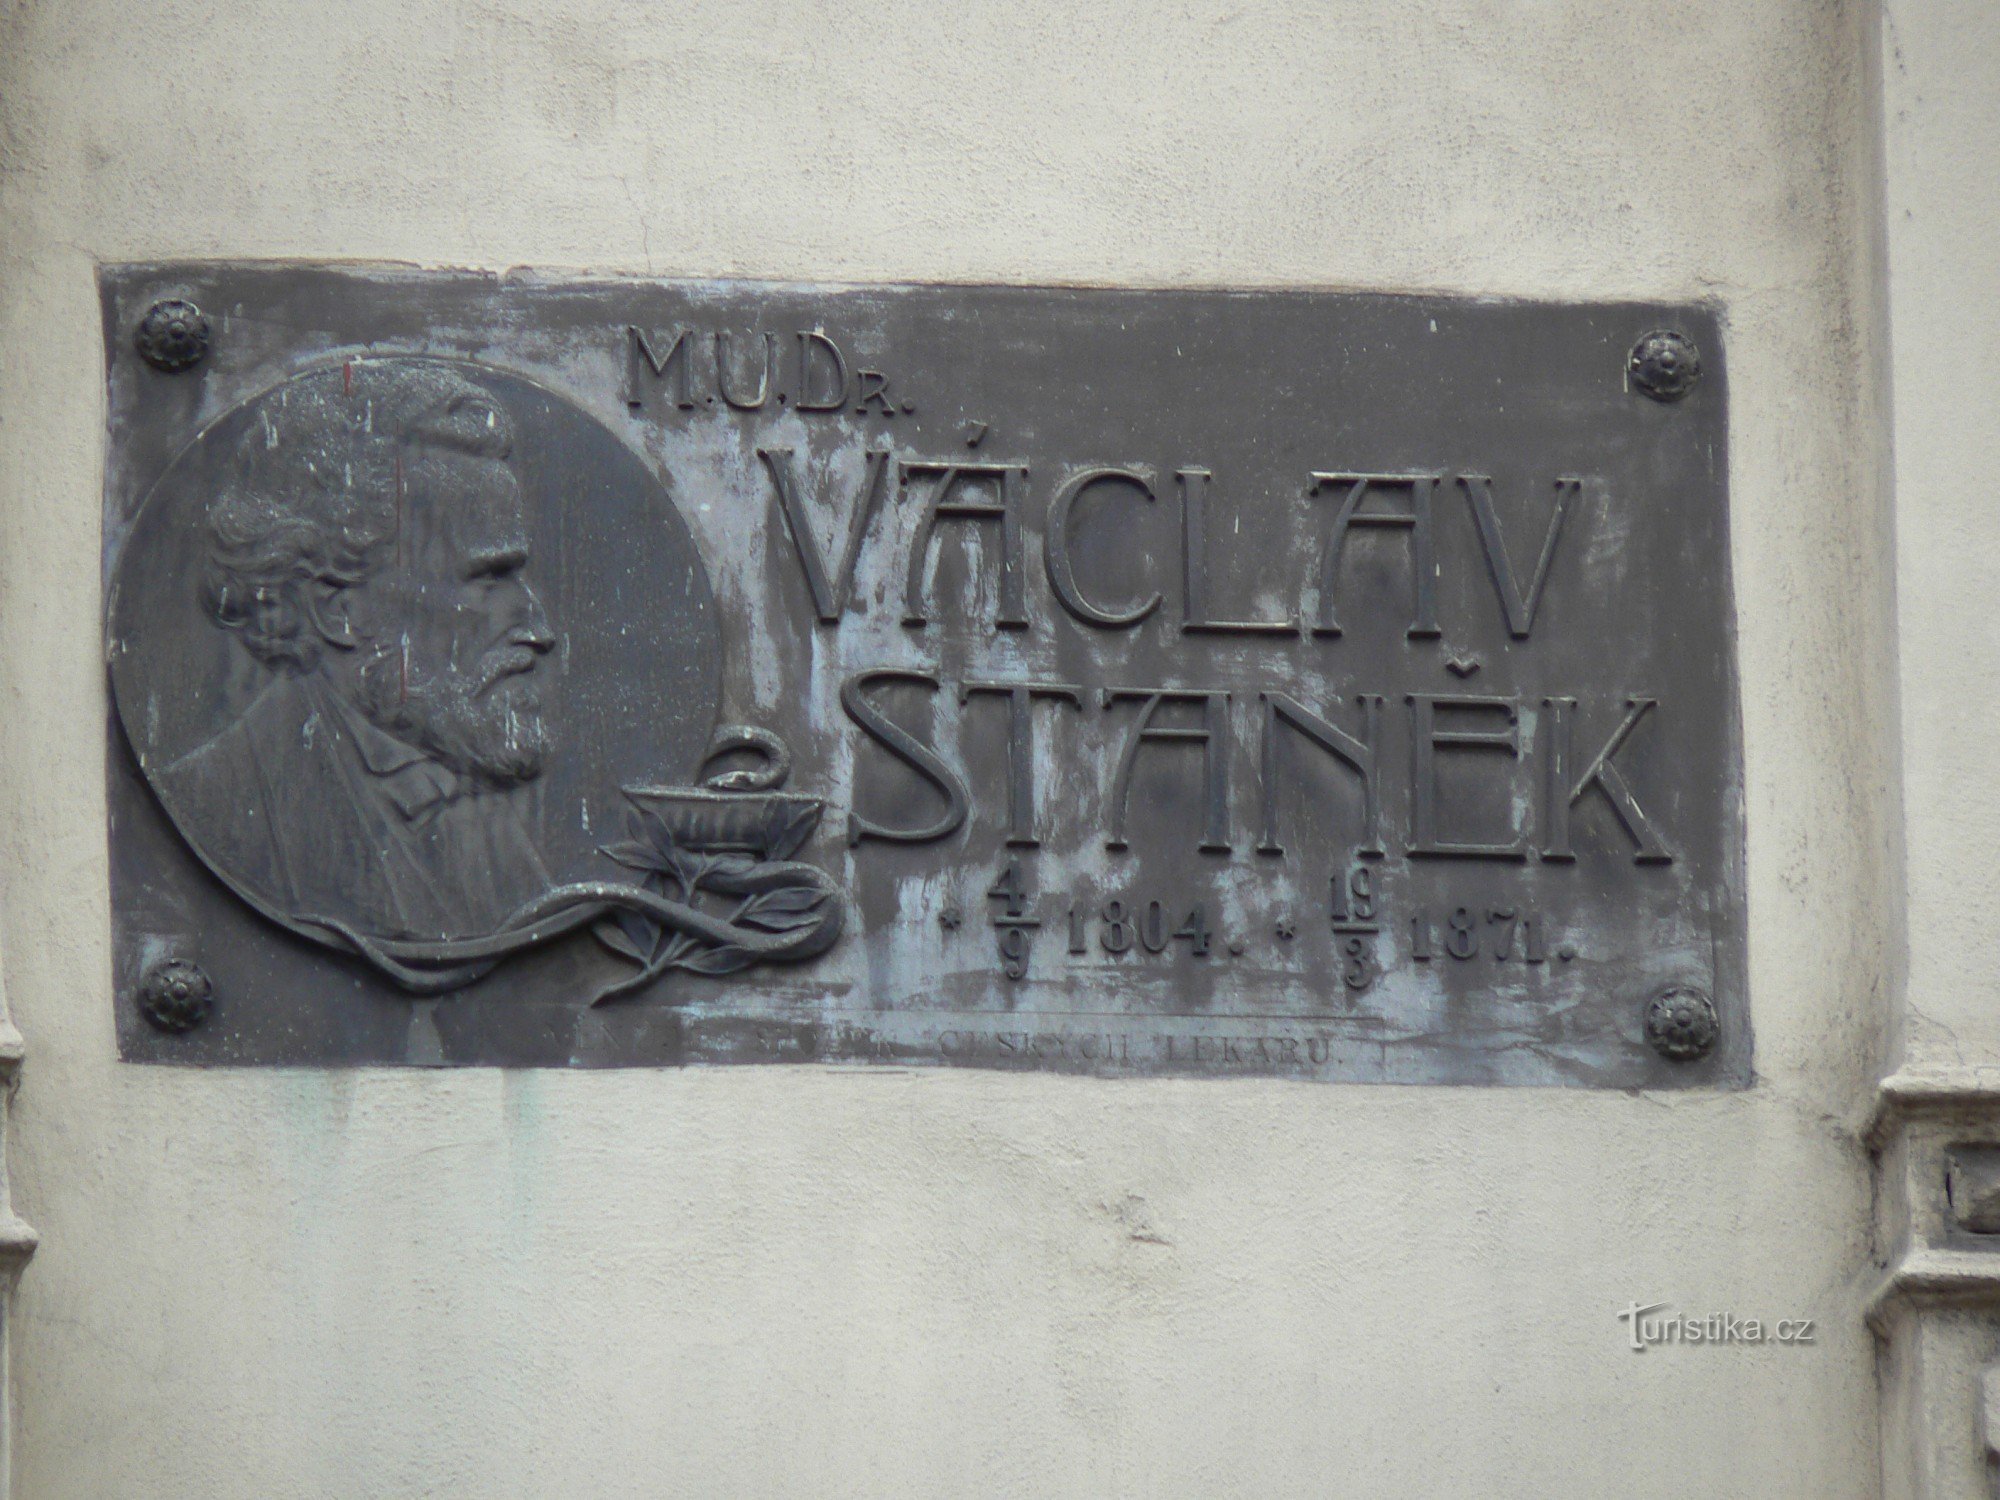 Minnesplakett MUDr. Václav Stanek